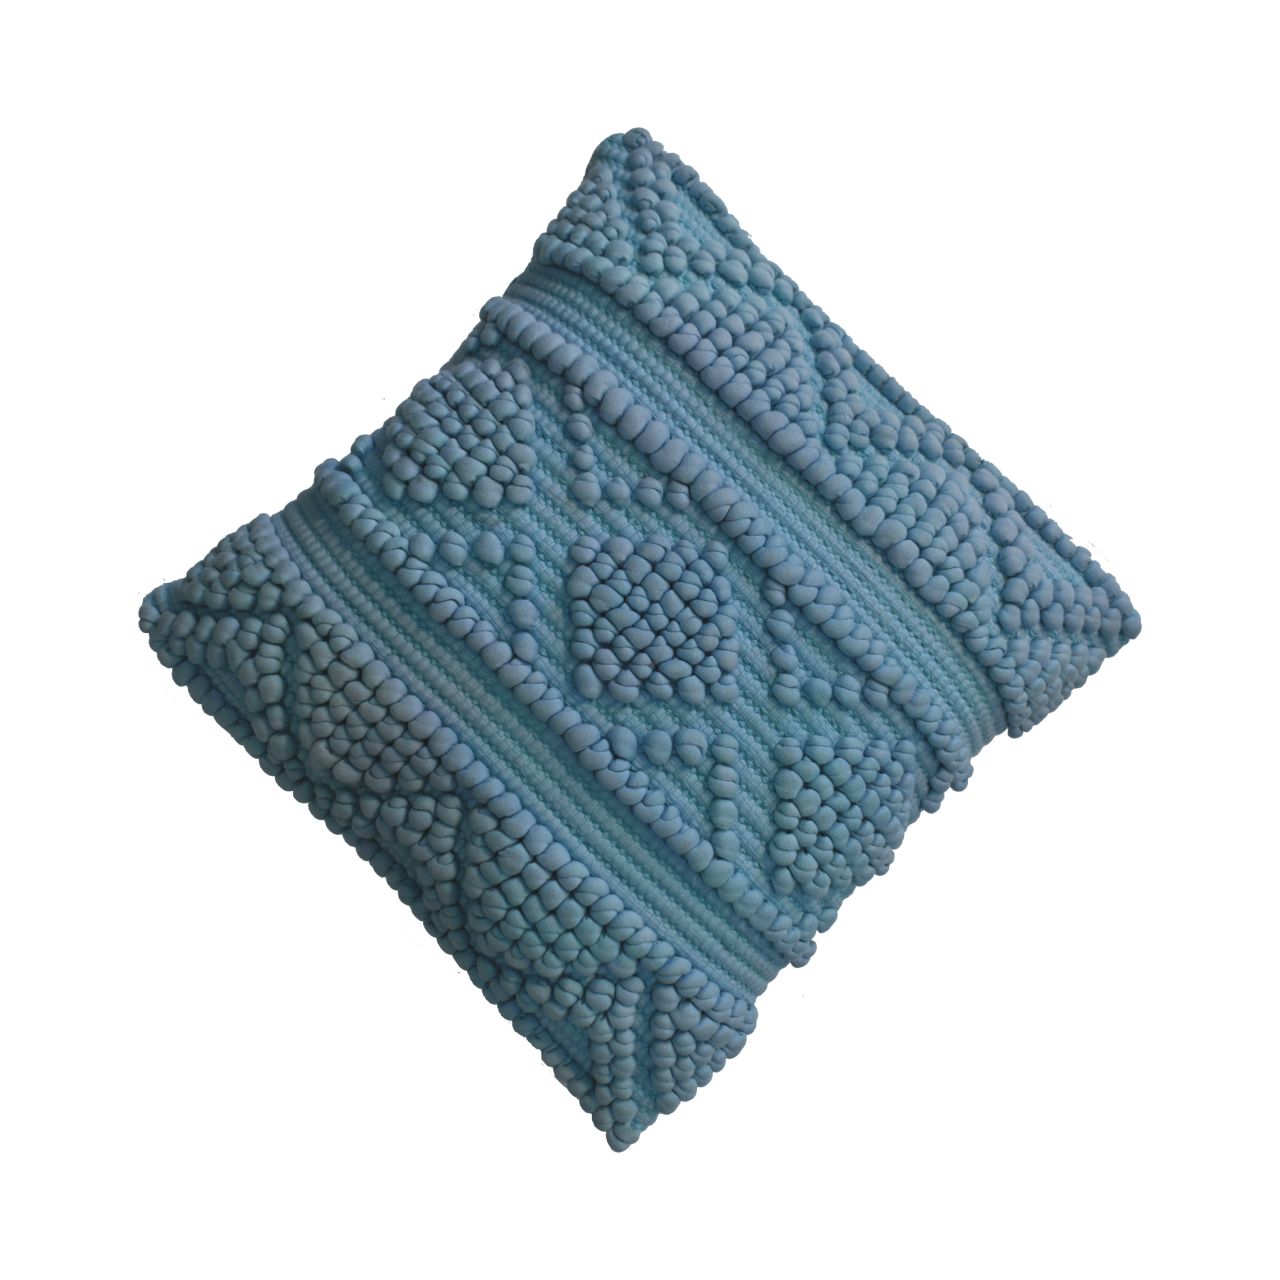 nola cushion set of 2 blue